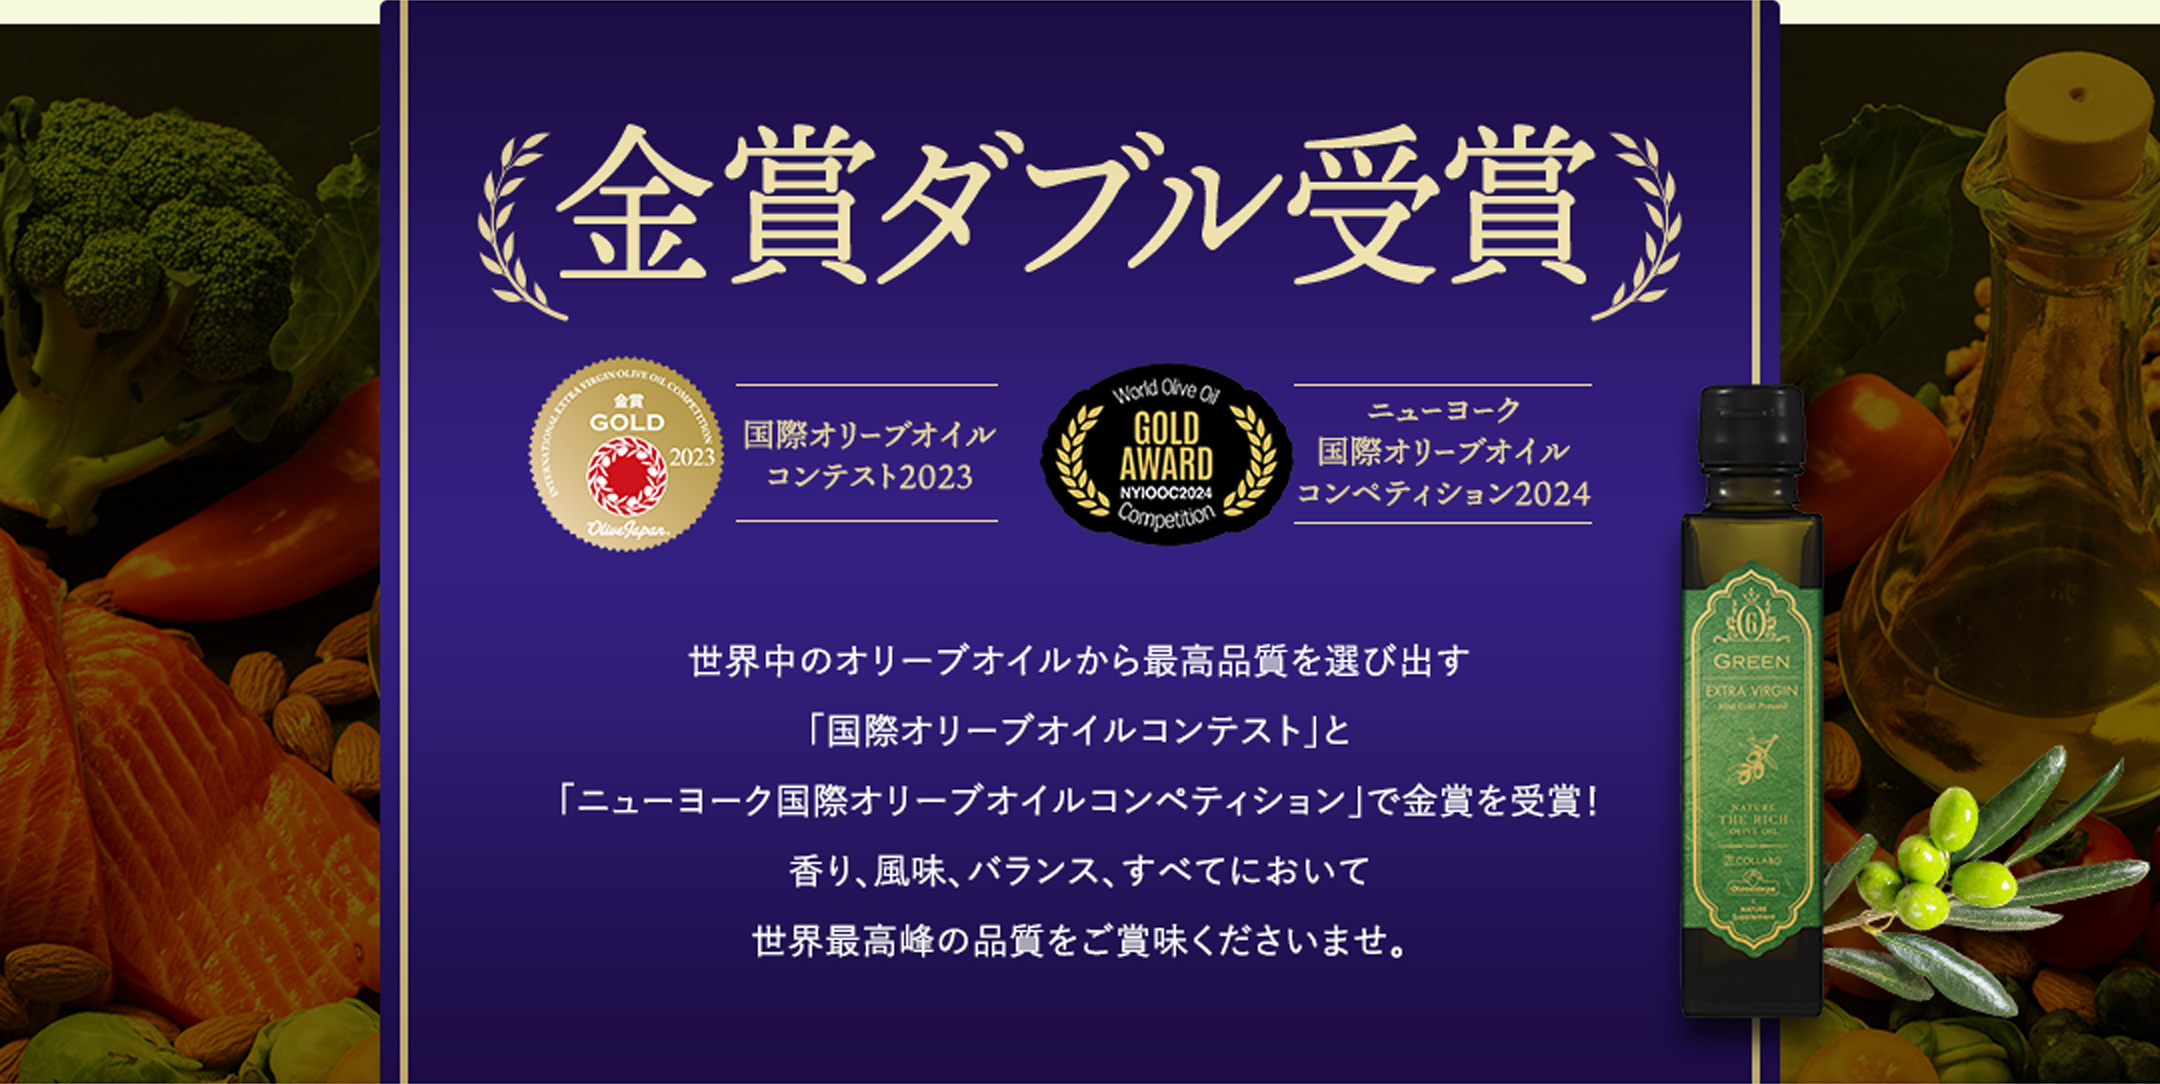 国際オリーブオイルコンテスト2023年金賞受賞